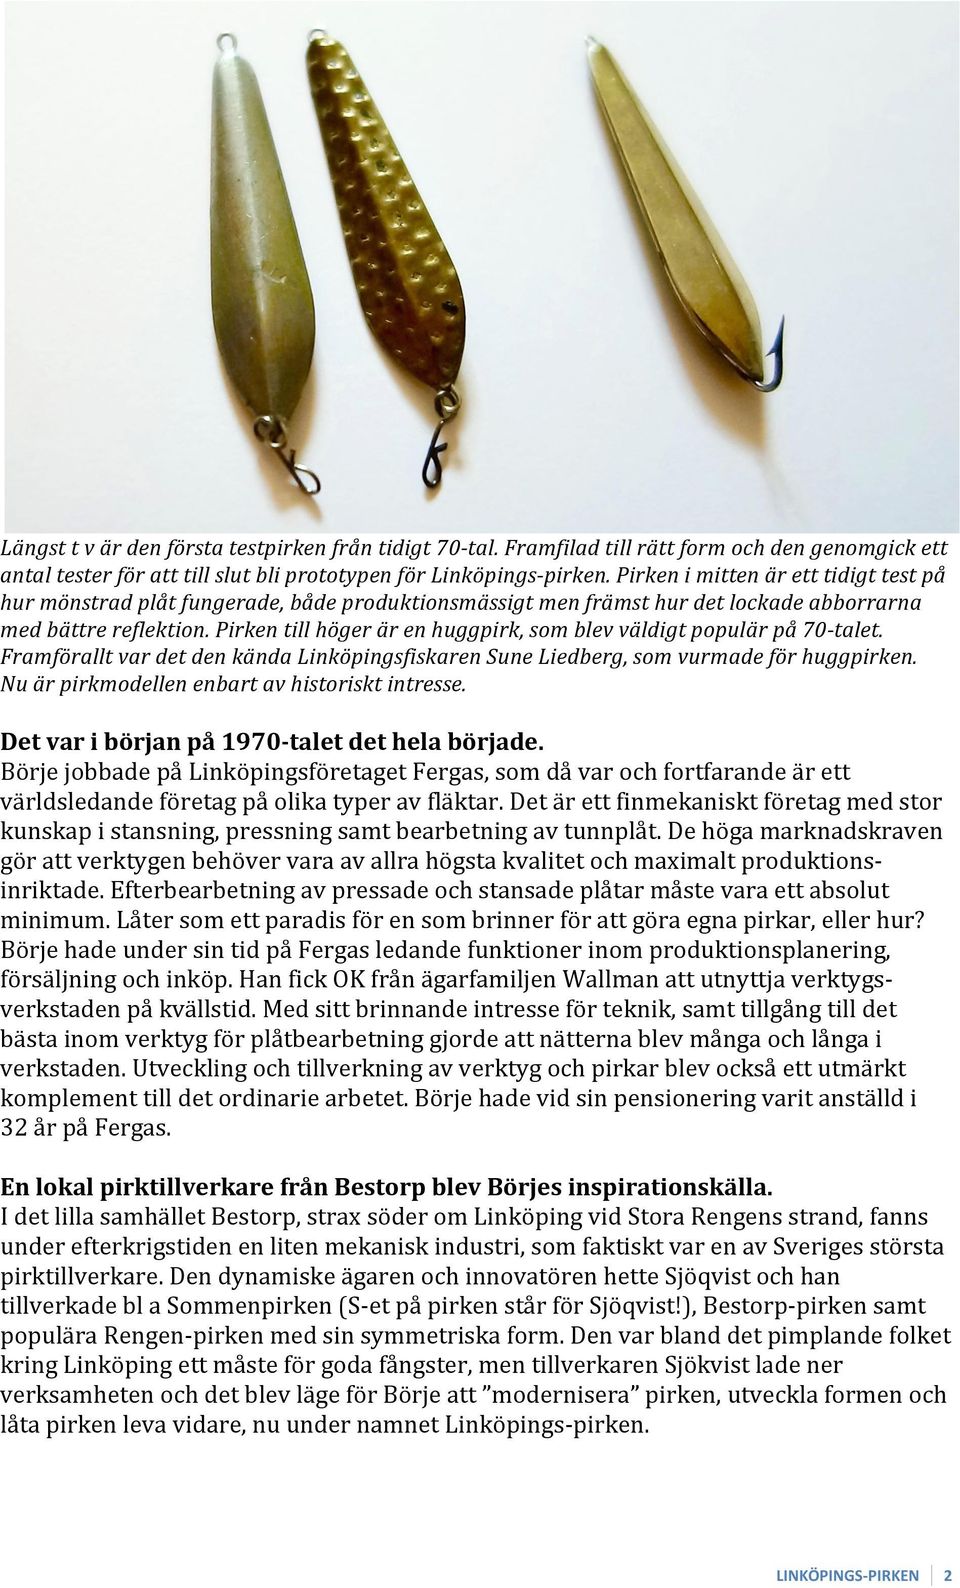 Pirken till höger är en huggpirk, som blev väldigt populär på 70-talet. Framförallt var det den kända Linköpingsfiskaren Sune Liedberg, som vurmade för huggpirken.